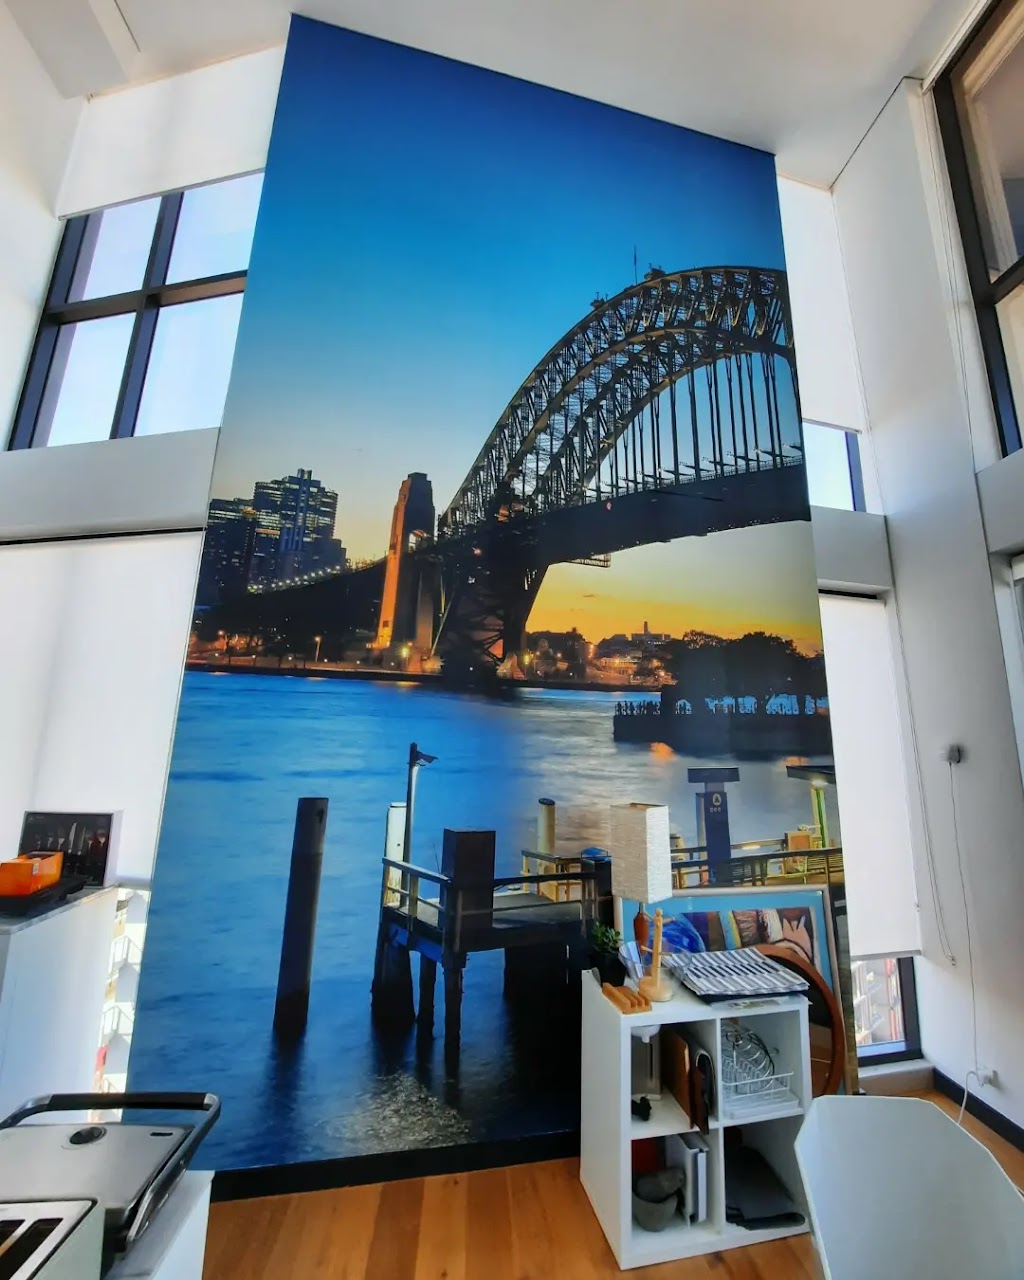 Wallpaper installer | Ingleside NSW 2101, Australia | Phone: 0470 395 348